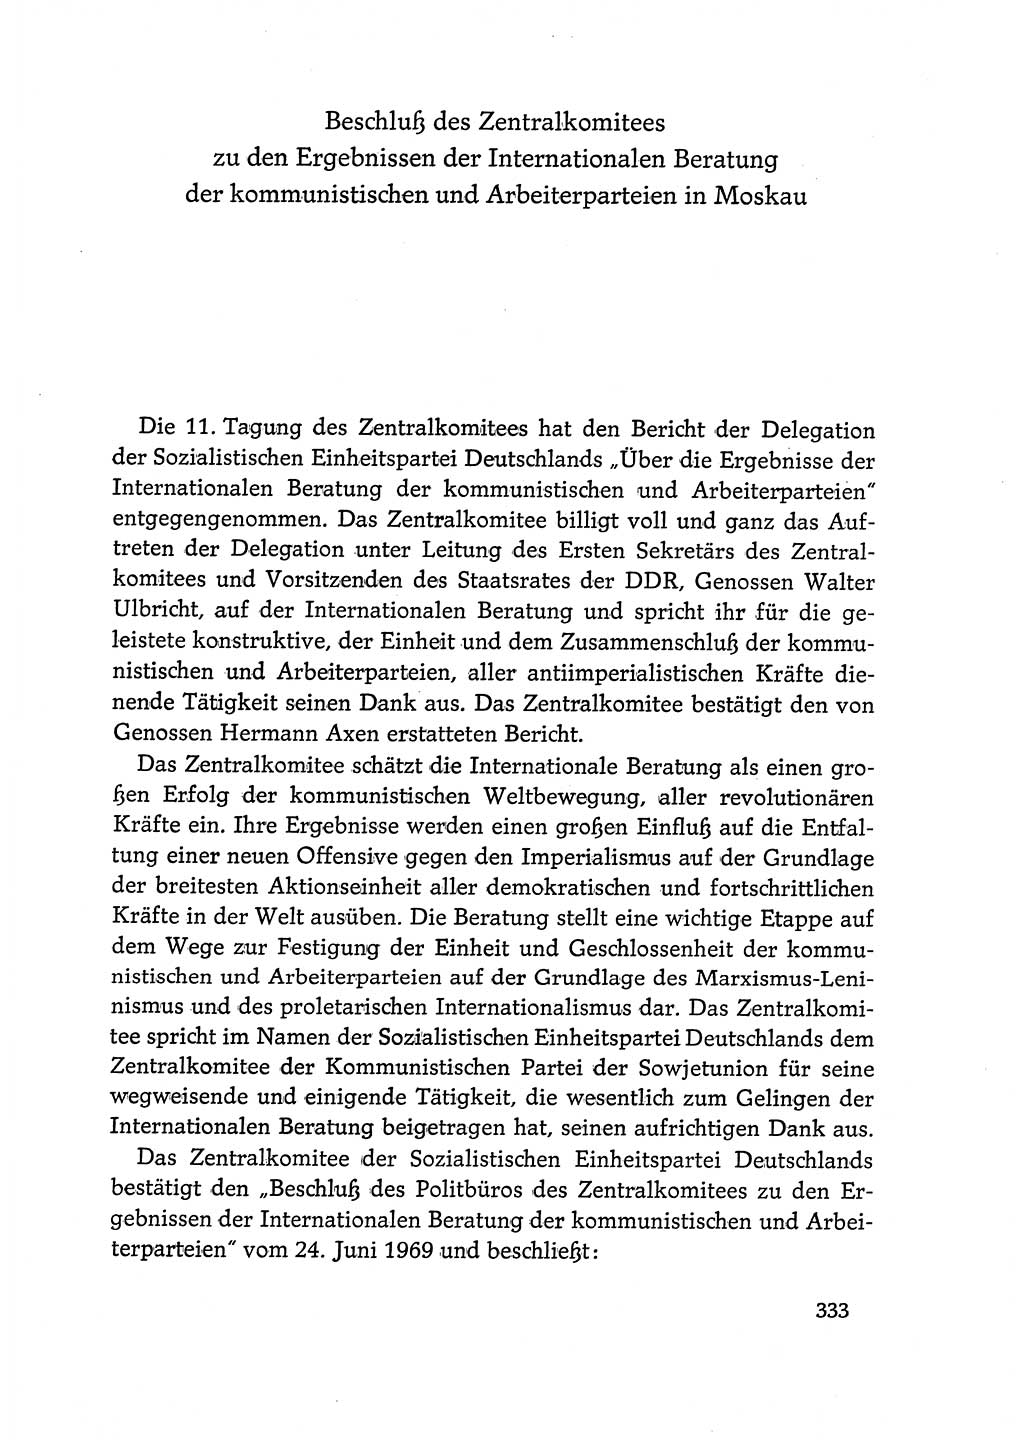 Dokumente der Sozialistischen Einheitspartei Deutschlands (SED) [Deutsche Demokratische Republik (DDR)] 1968-1969, Seite 333 (Dok. SED DDR 1968-1969, S. 333)